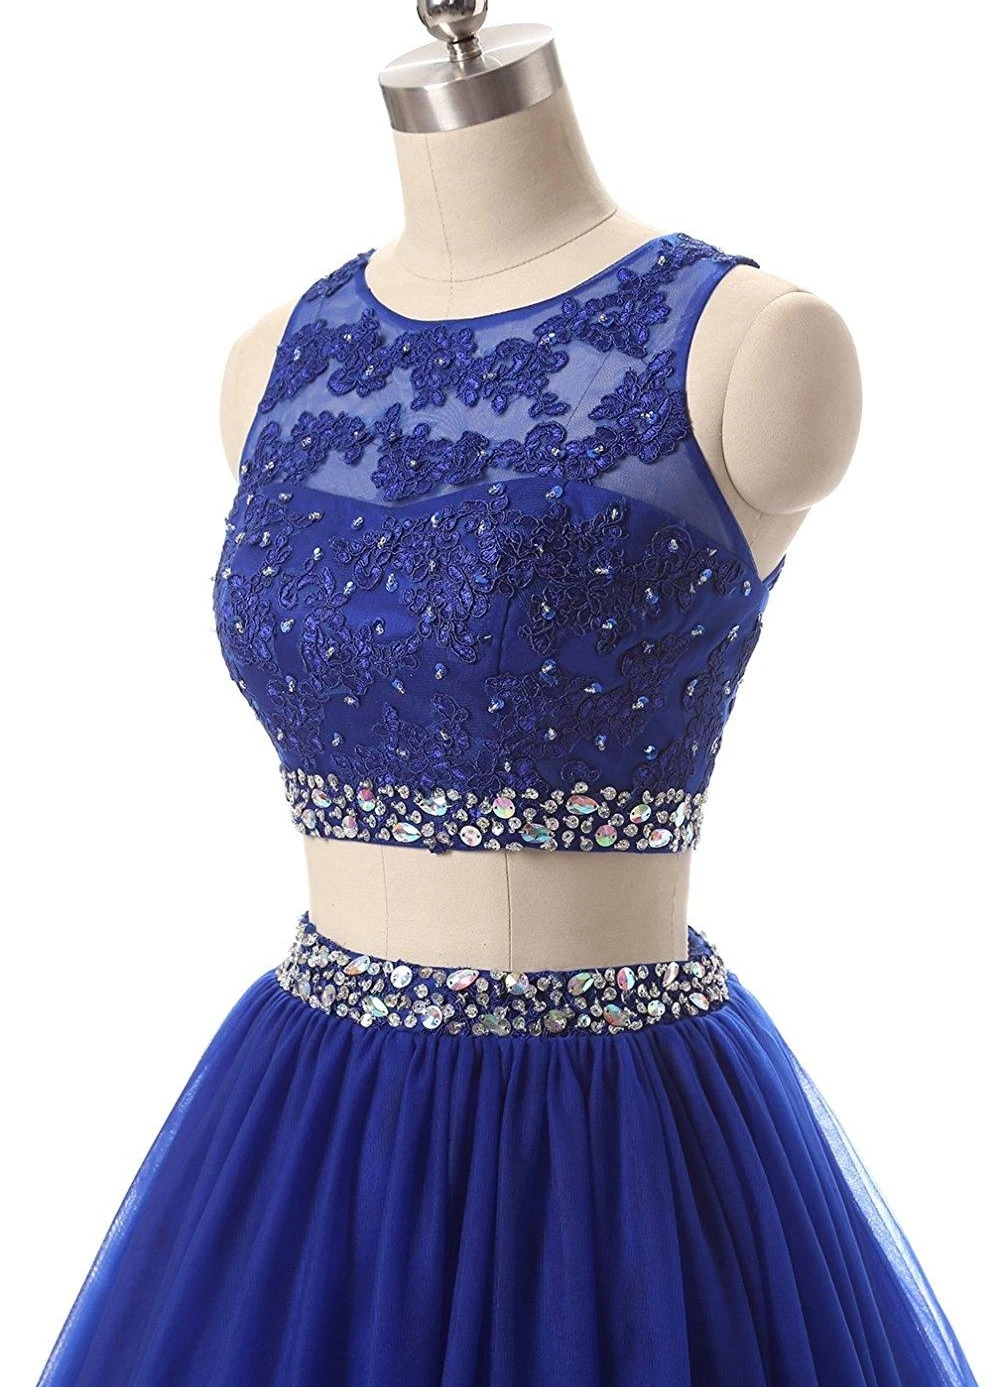 Vestidos כחול רויאל תכשיט לצוואר שני חלקים שמלות לנשף 2019 Appliqus חרוזים ערב רשמי שמלות מפלגה שמלות חלוק דה נשף . ' - ' . 5